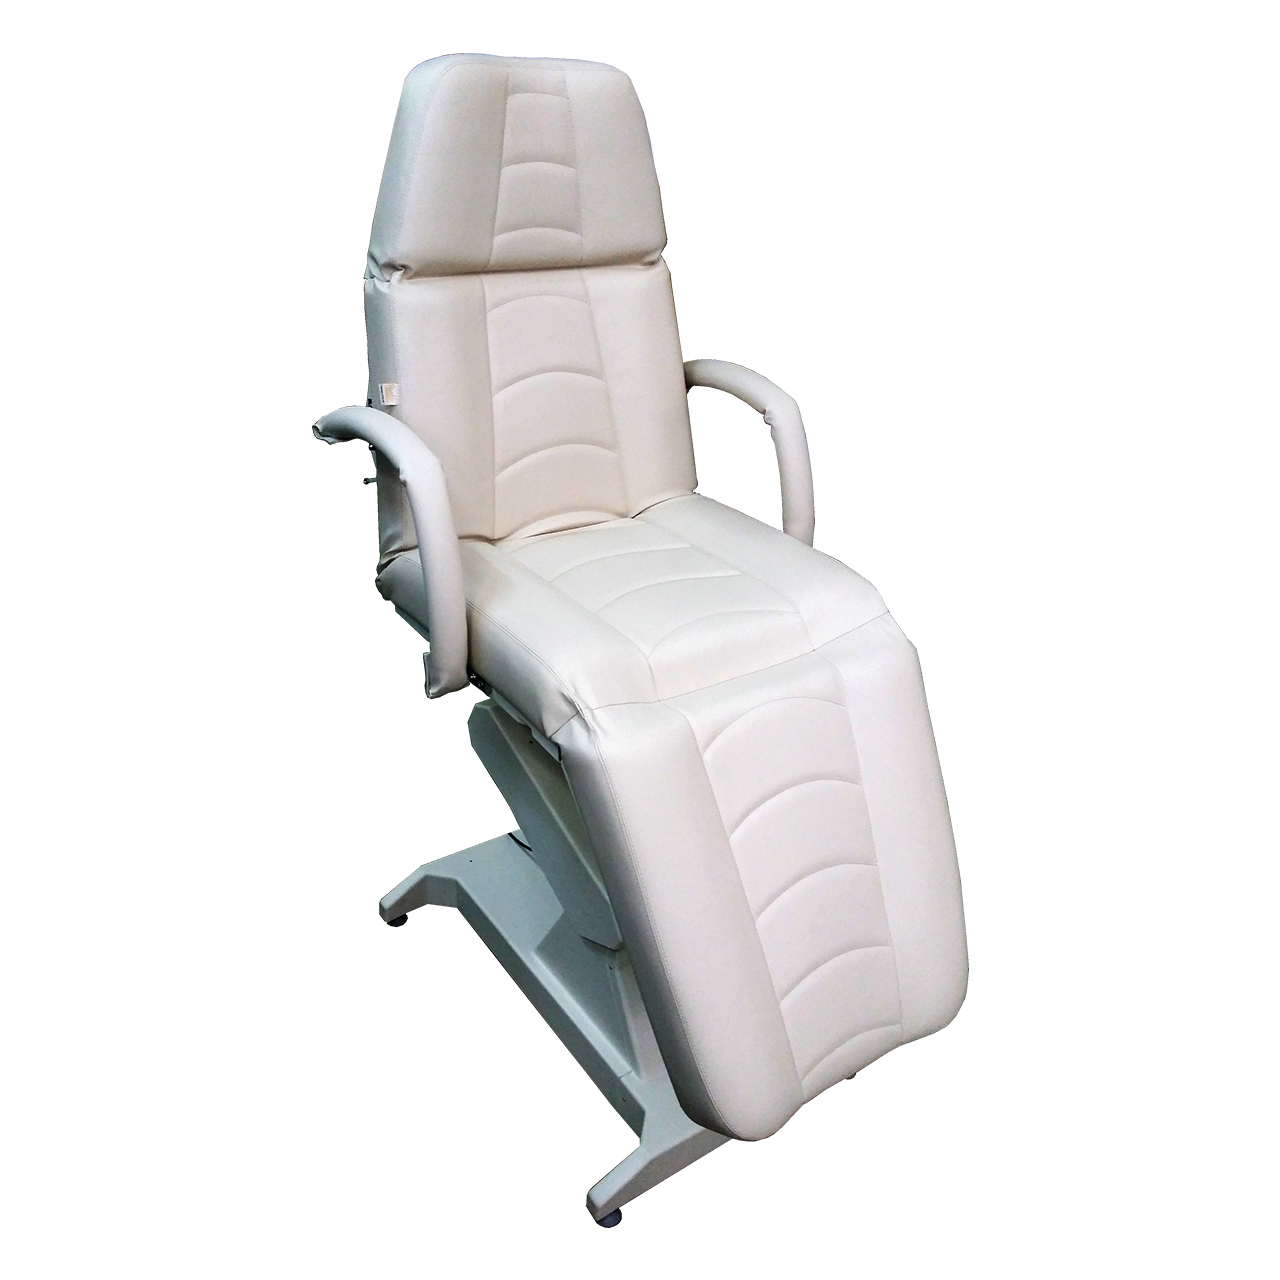 Кресло процедурное (для мезотерапии) с электроприводом ОД-4 (Мезо), с откидными подлокотниками, с ножной педалью управления.